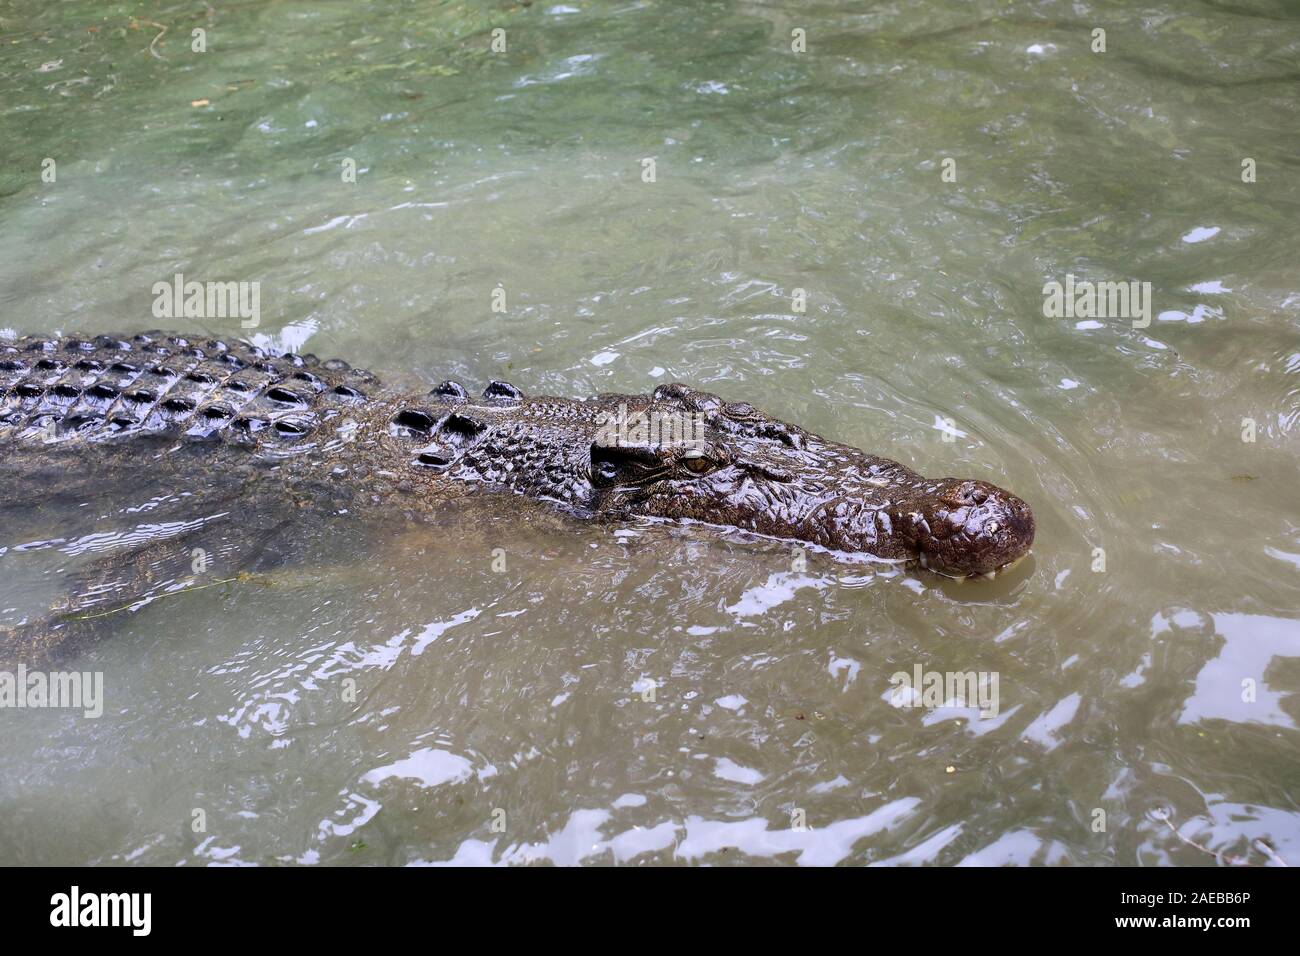 El cocodrilo de agua salada (Crocodylus porosus) nadando en el agua Foto de stock